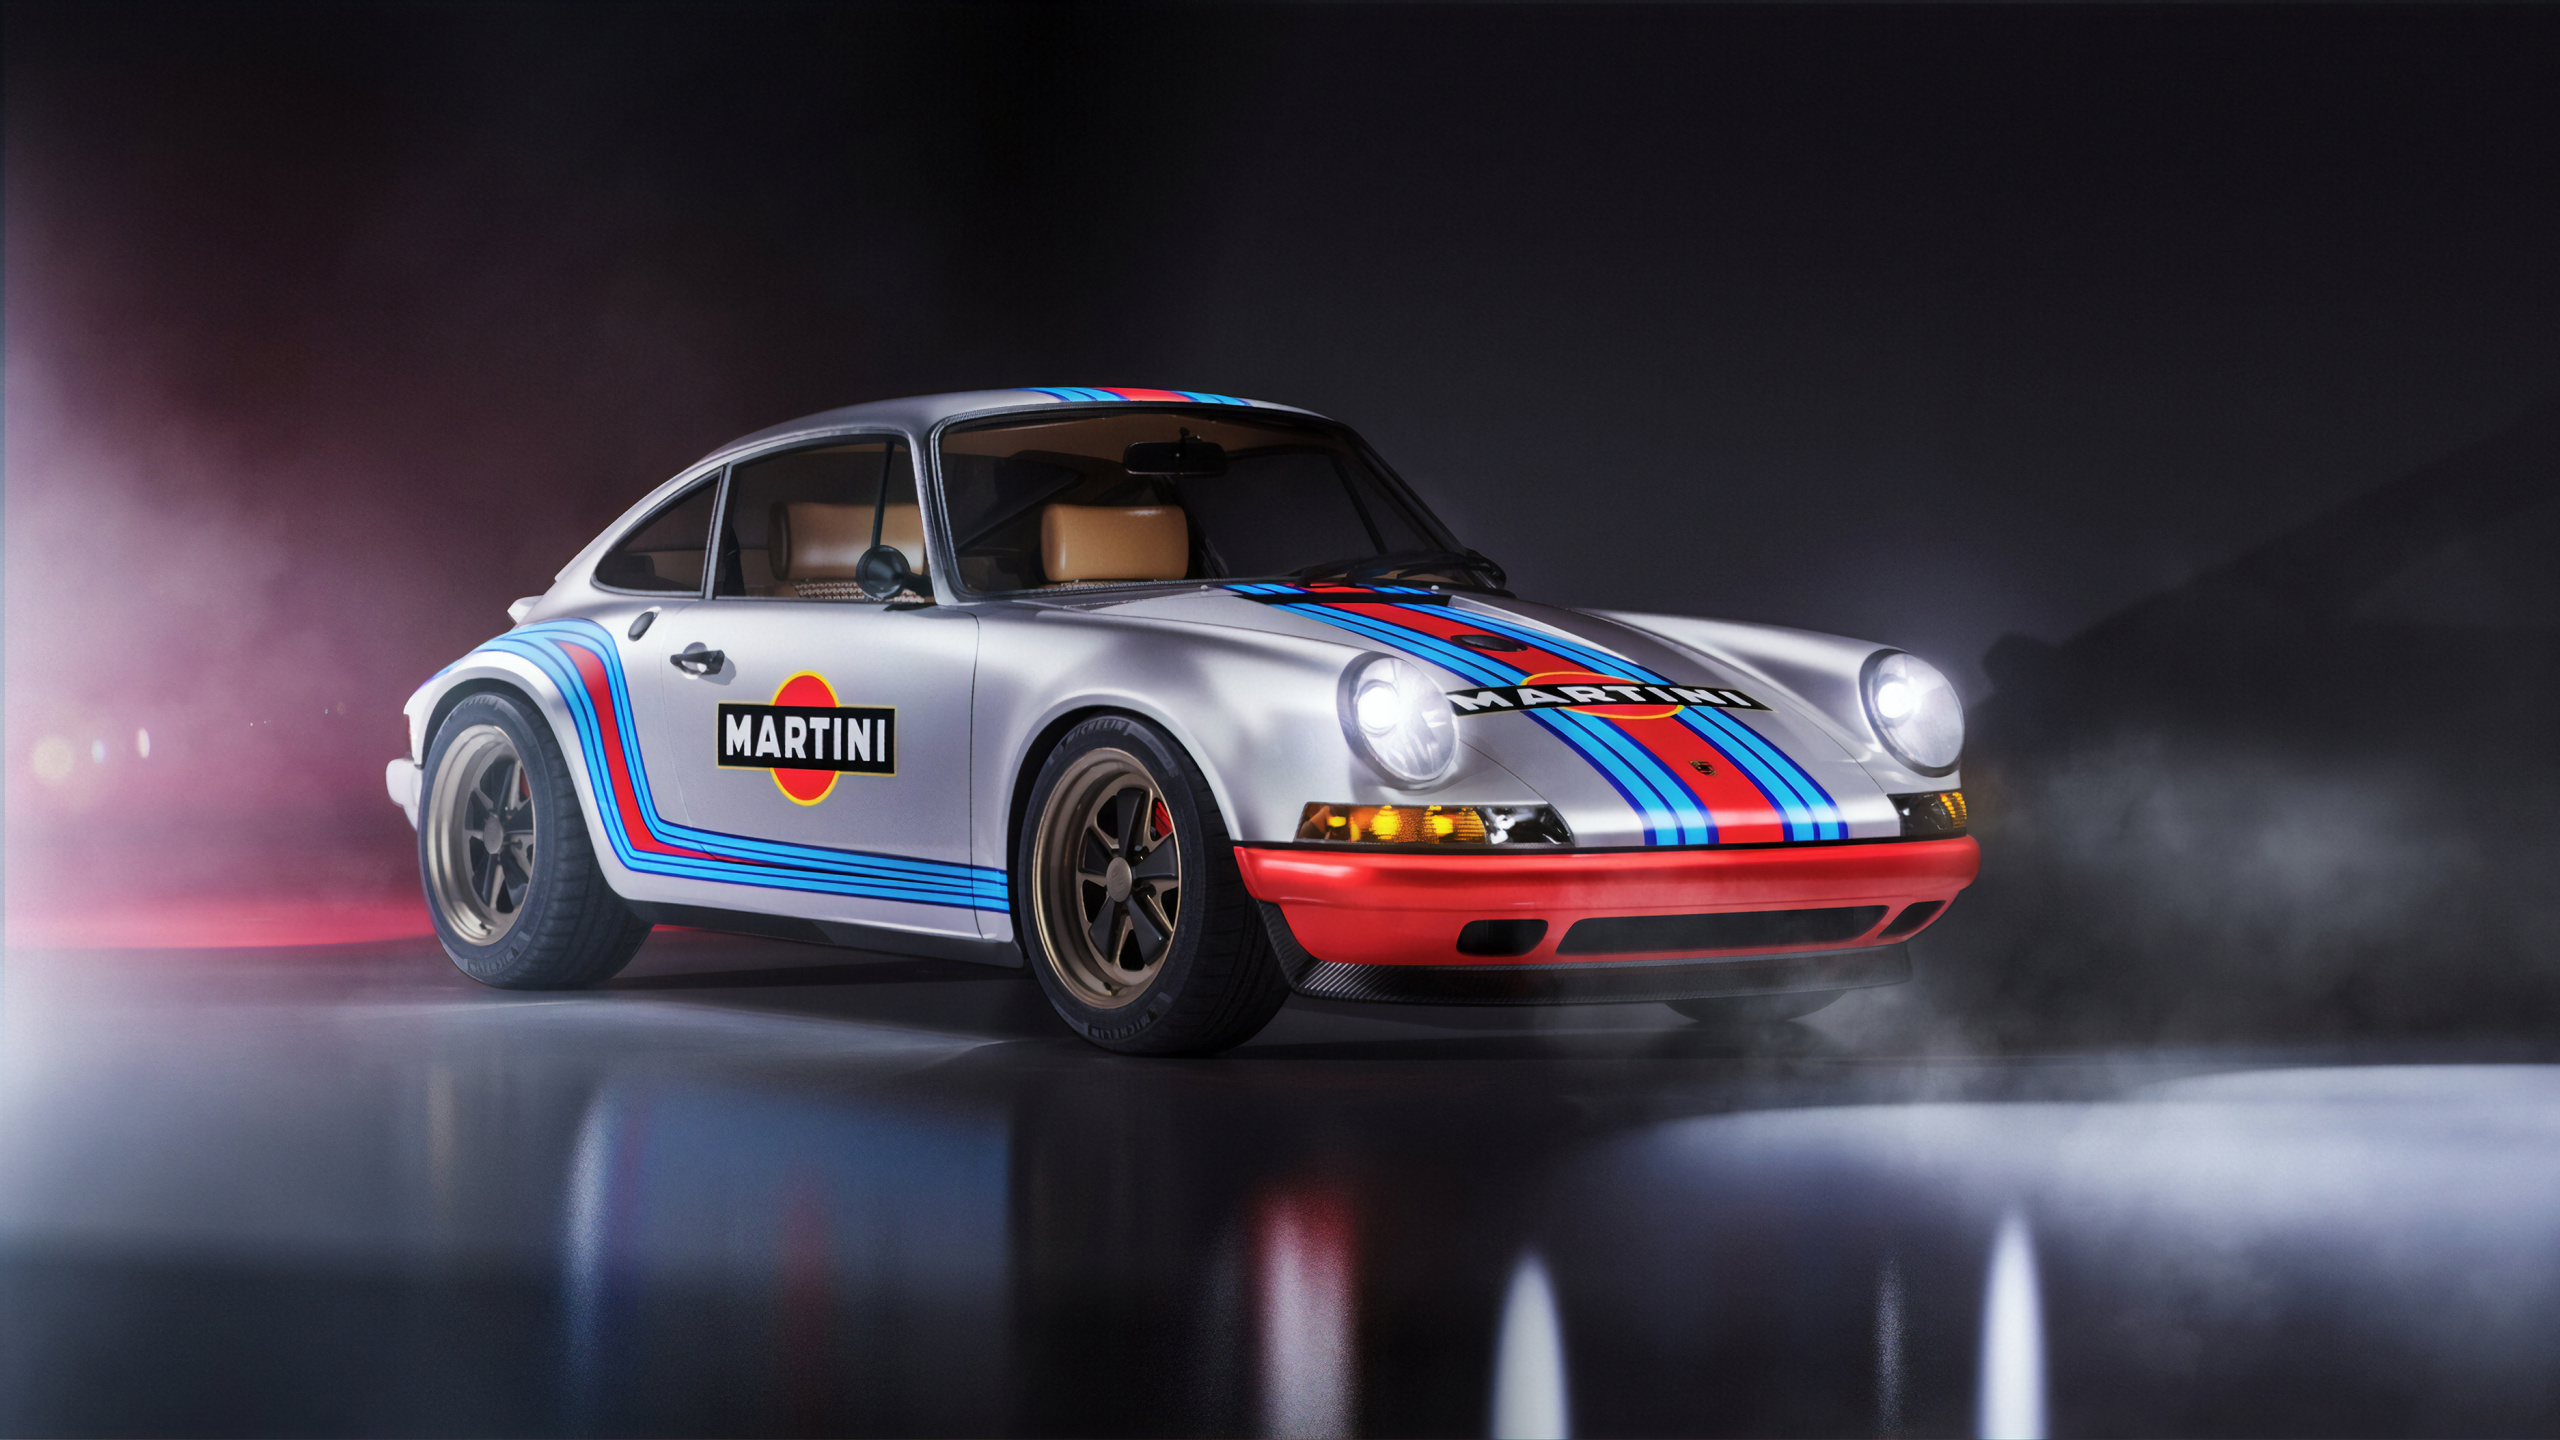 Porsche 911 Rouge et Bleu. Wallpaper in 2560x1440 Resolution